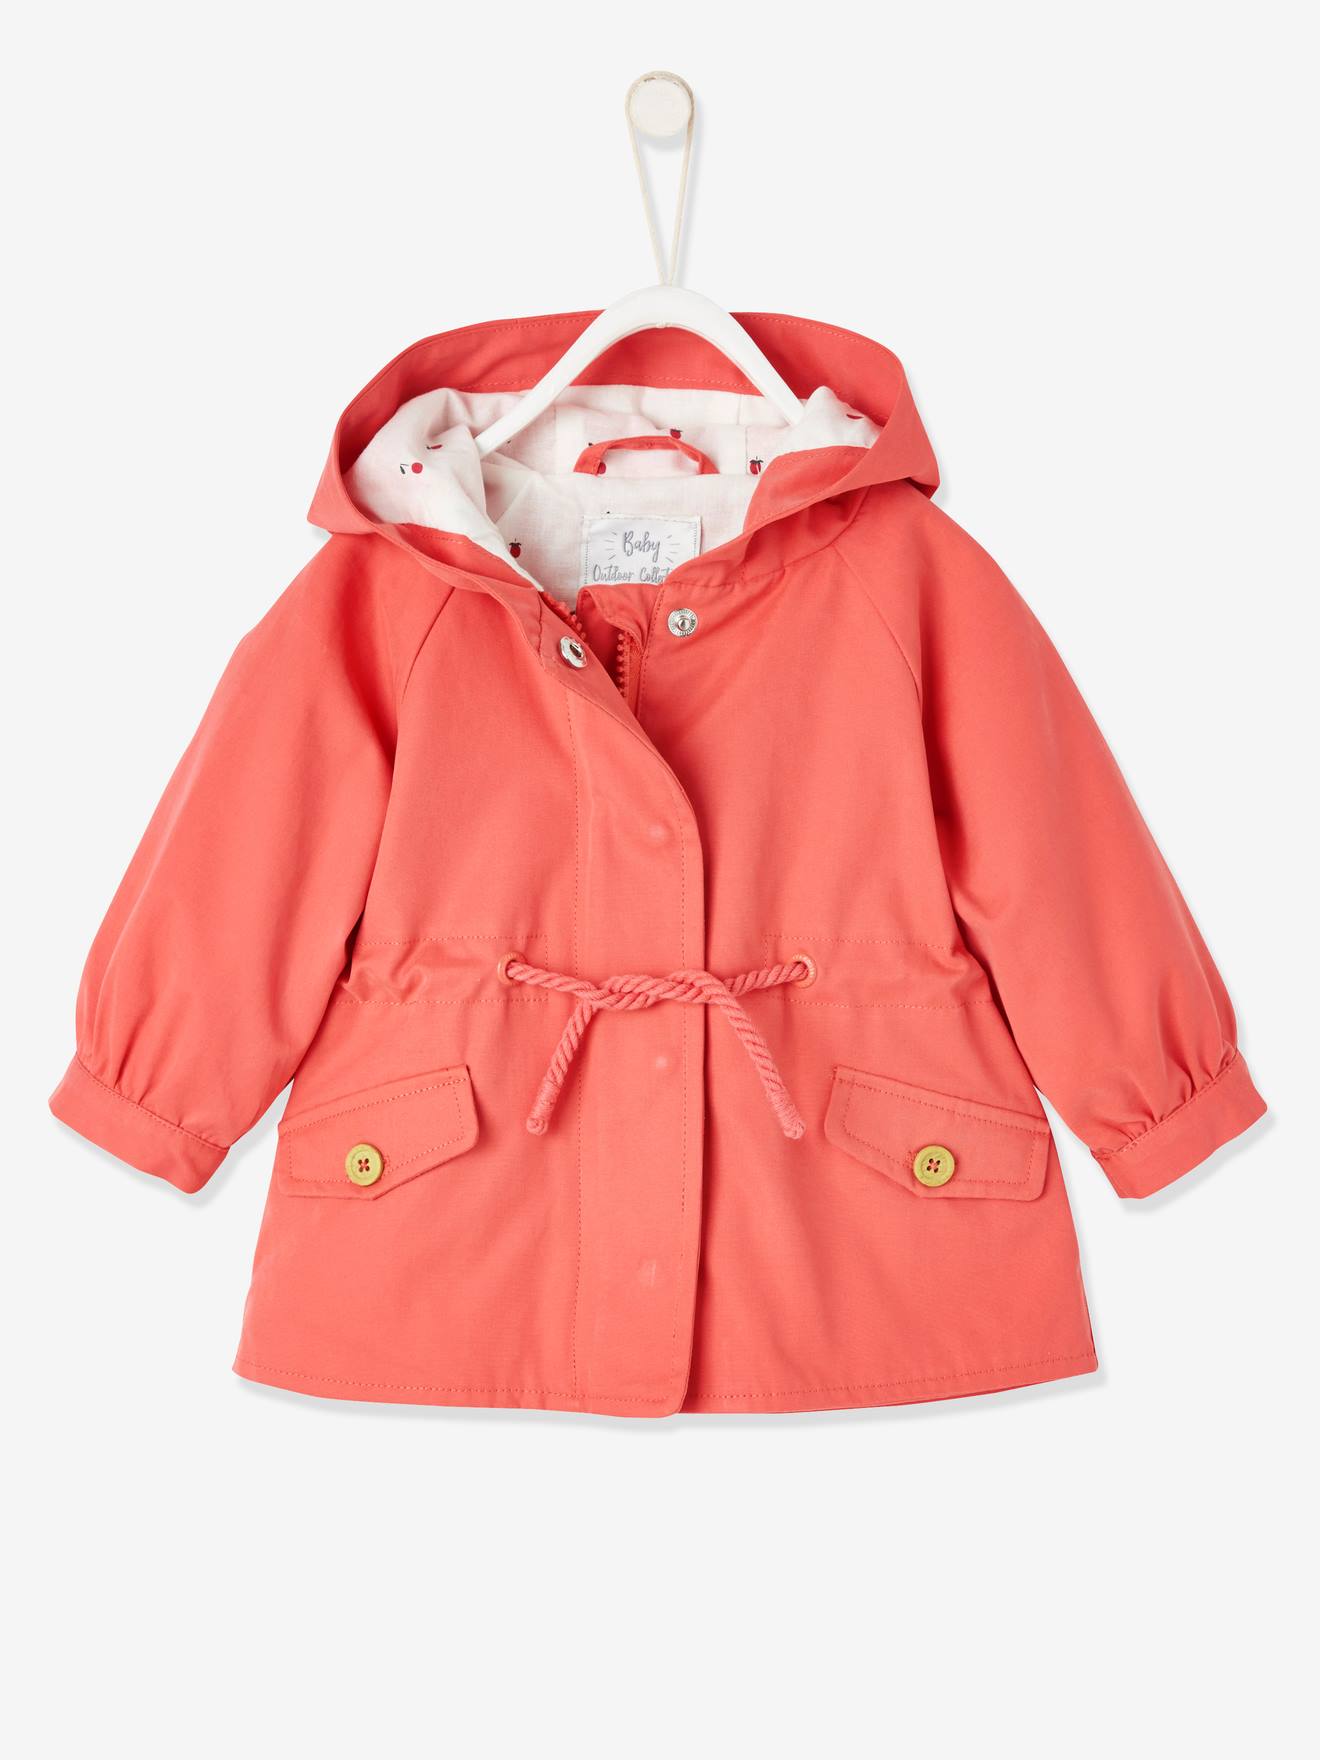 Parka con capucha para bebé niña naranja liso con motivos - Vertbaudet